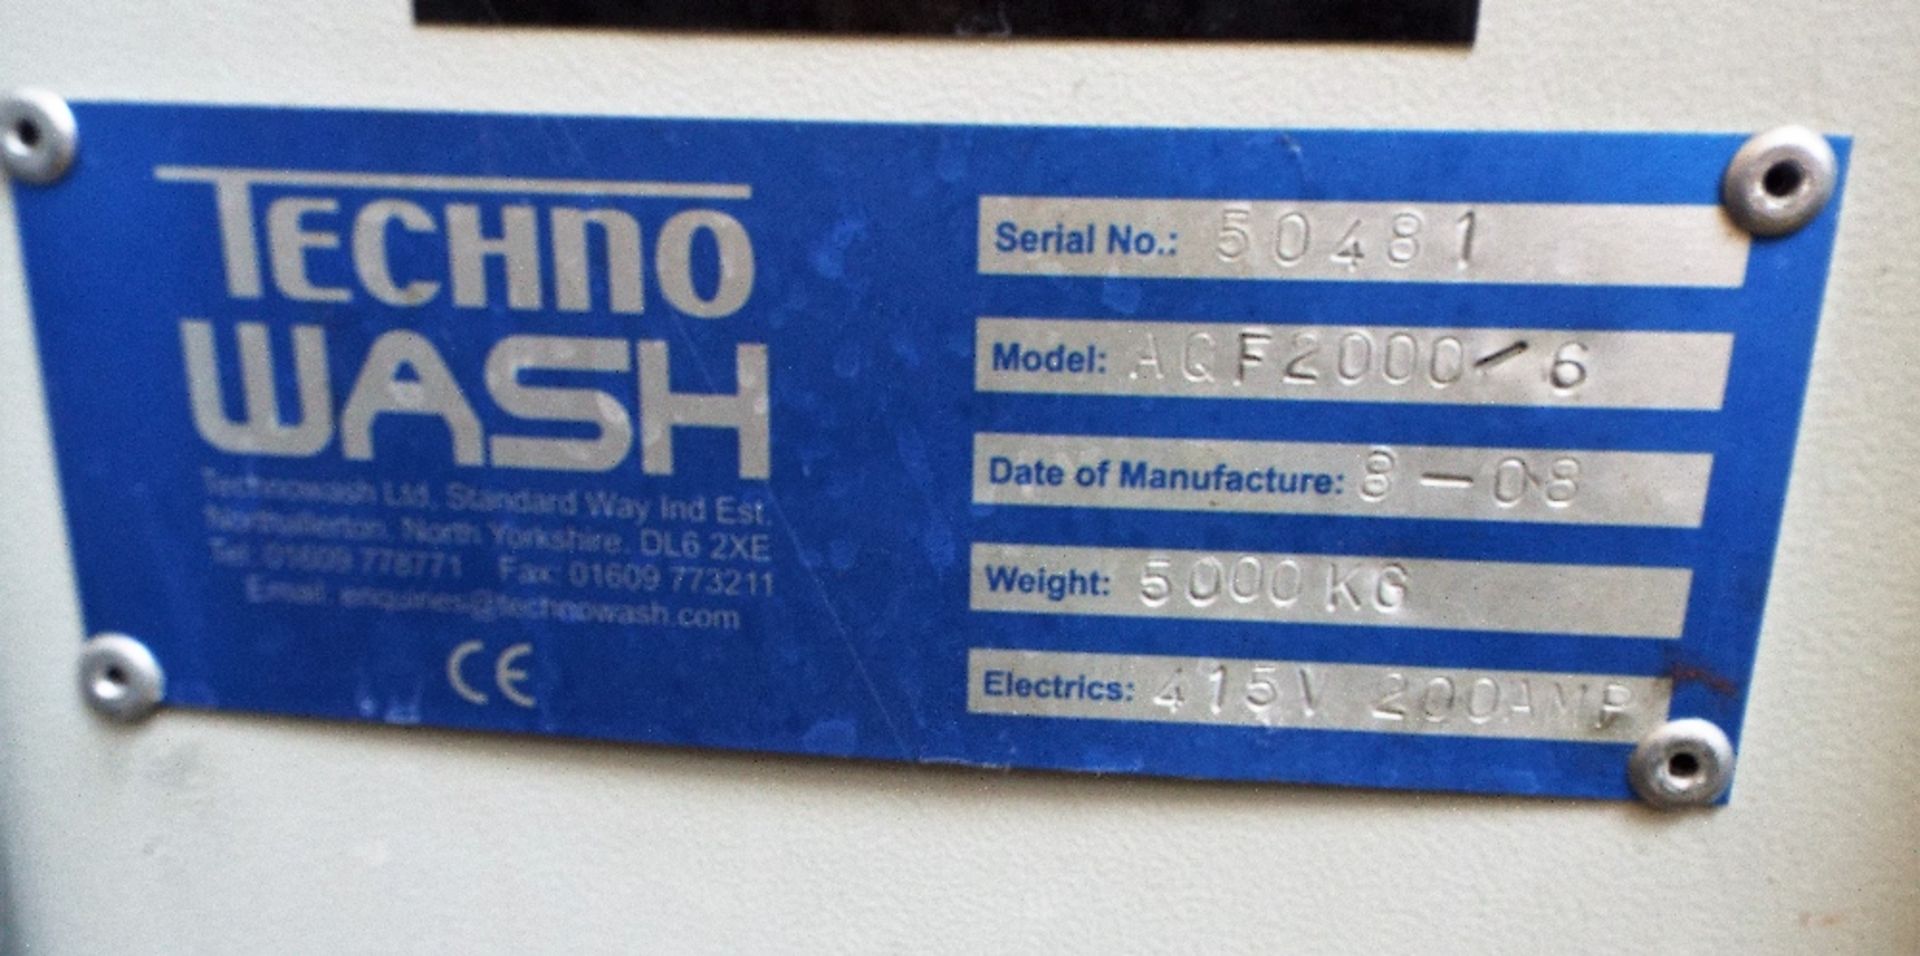 Technowash AQF2000/6 Multiple Stage Part Washing Machine - Image 14 of 29